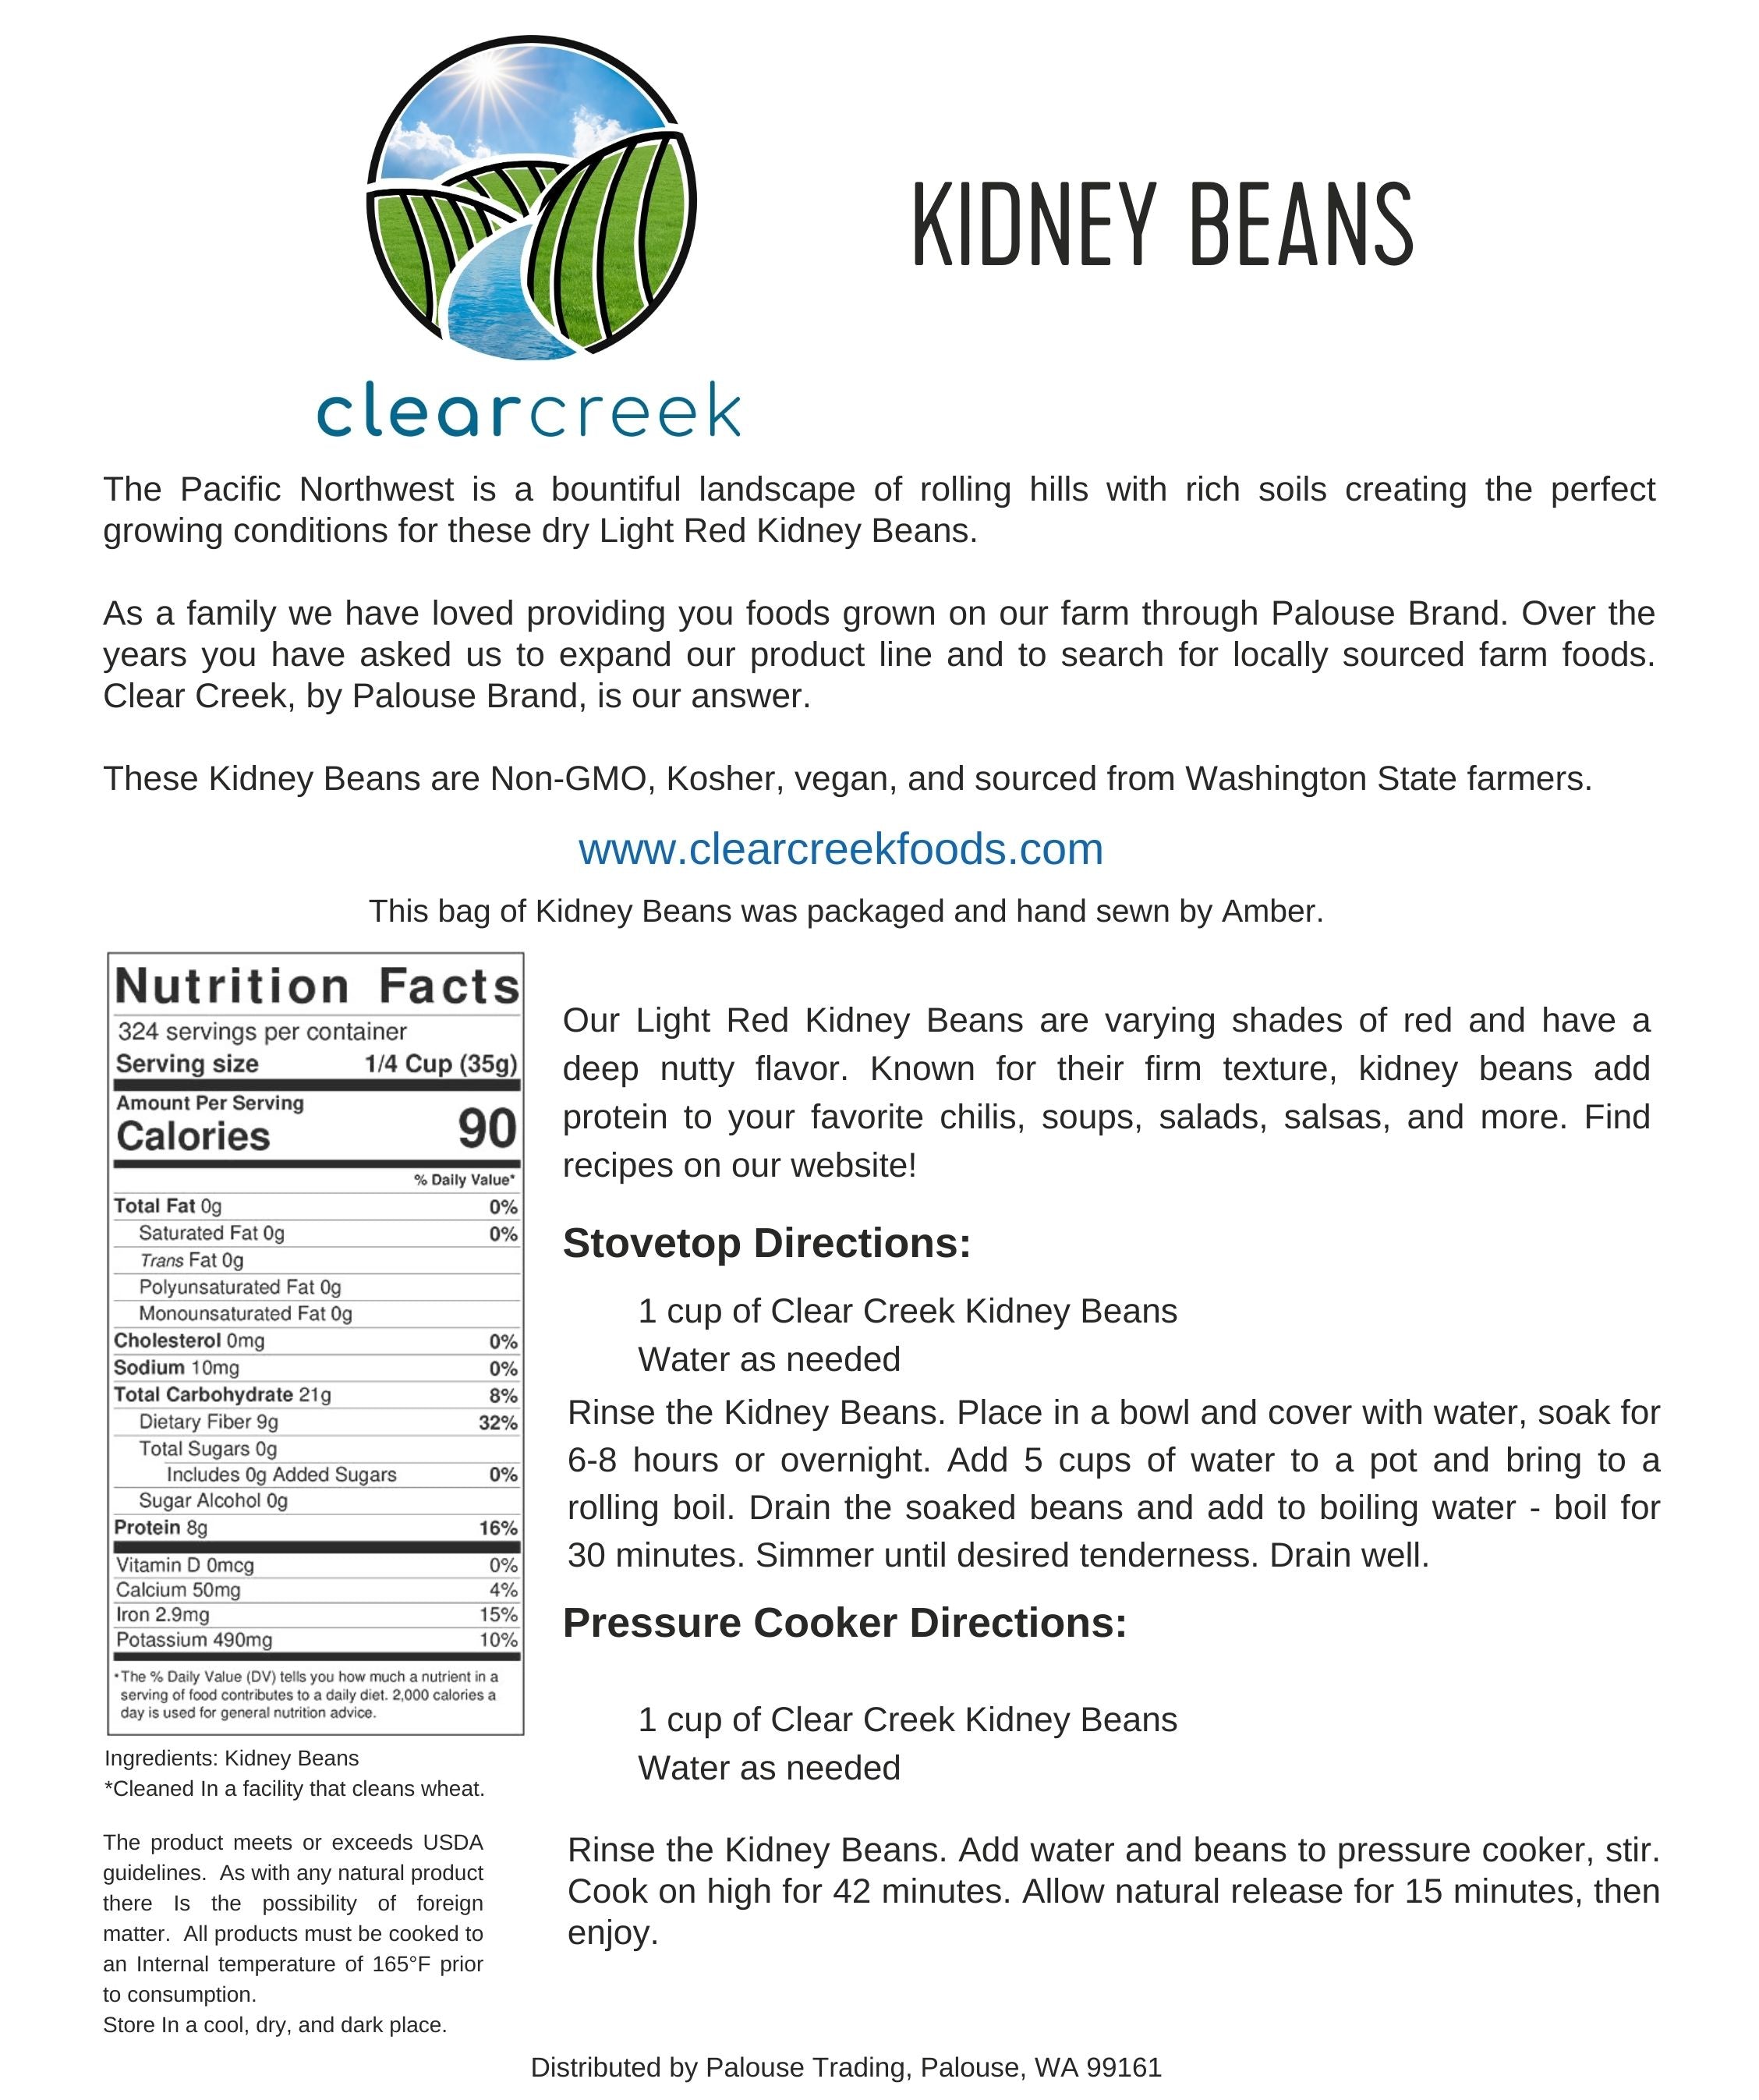 Kidney Beans | 25 LB